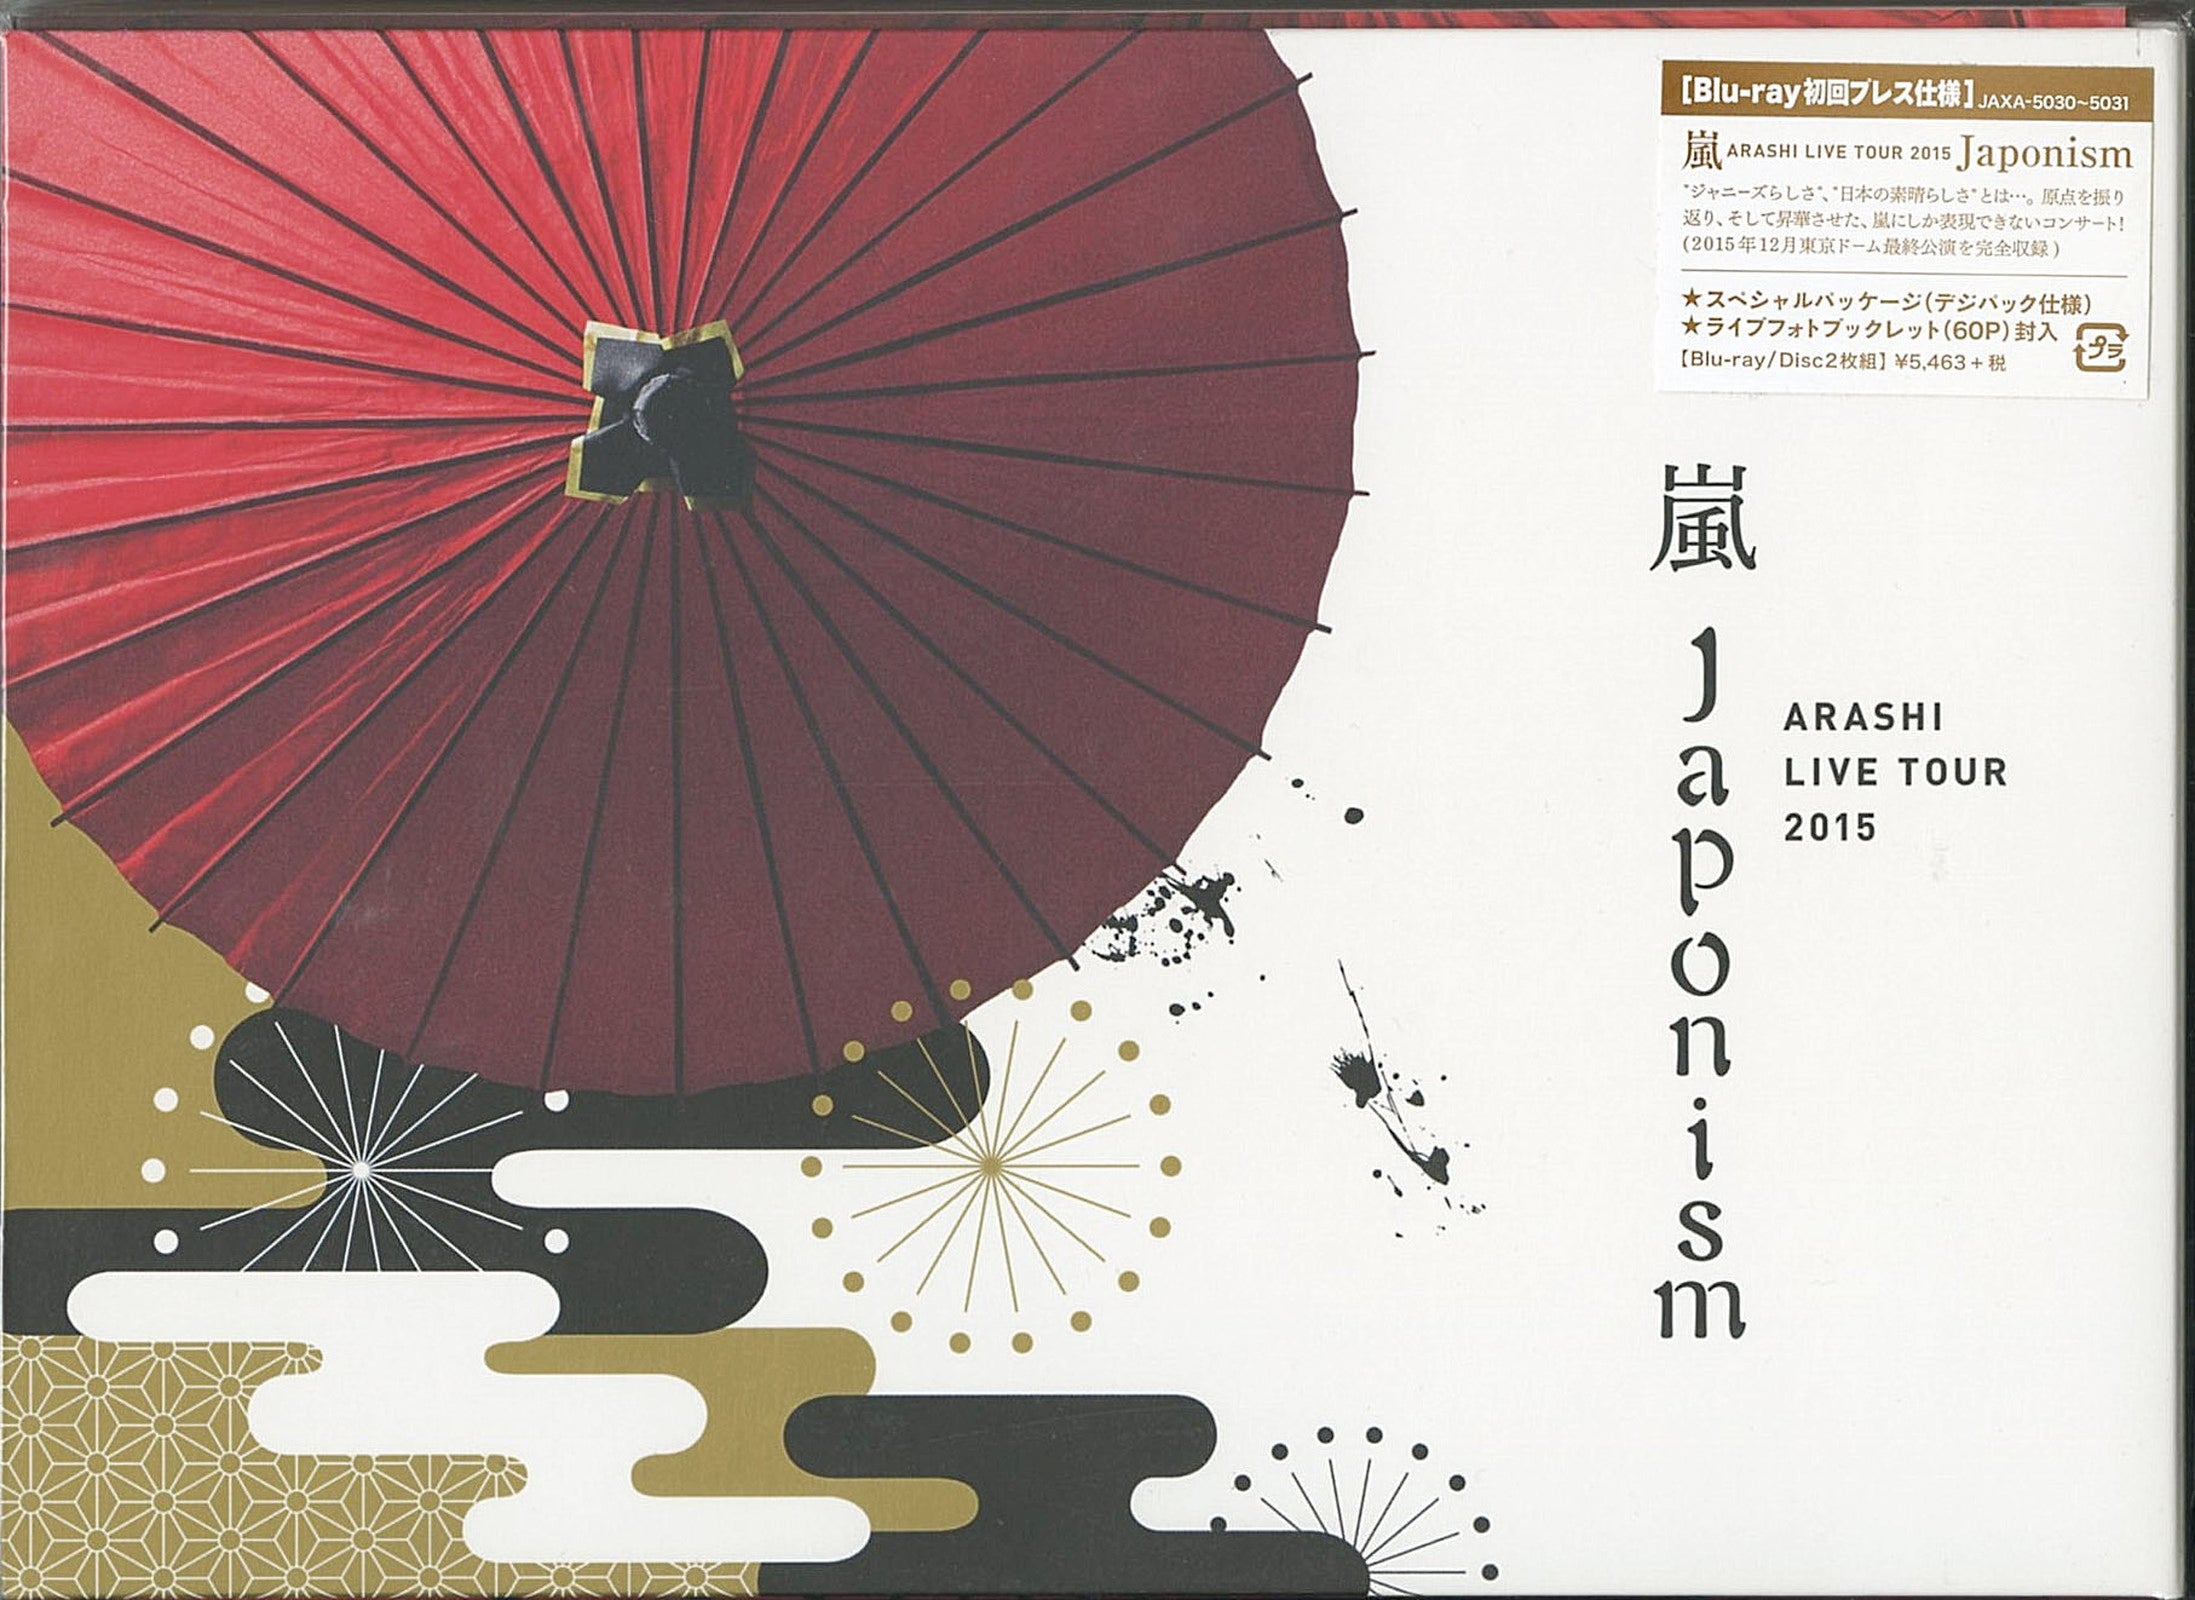 Arashi - Arashi Live Tour 2015 Japonism - Japan 2 Blu-ray – CDs